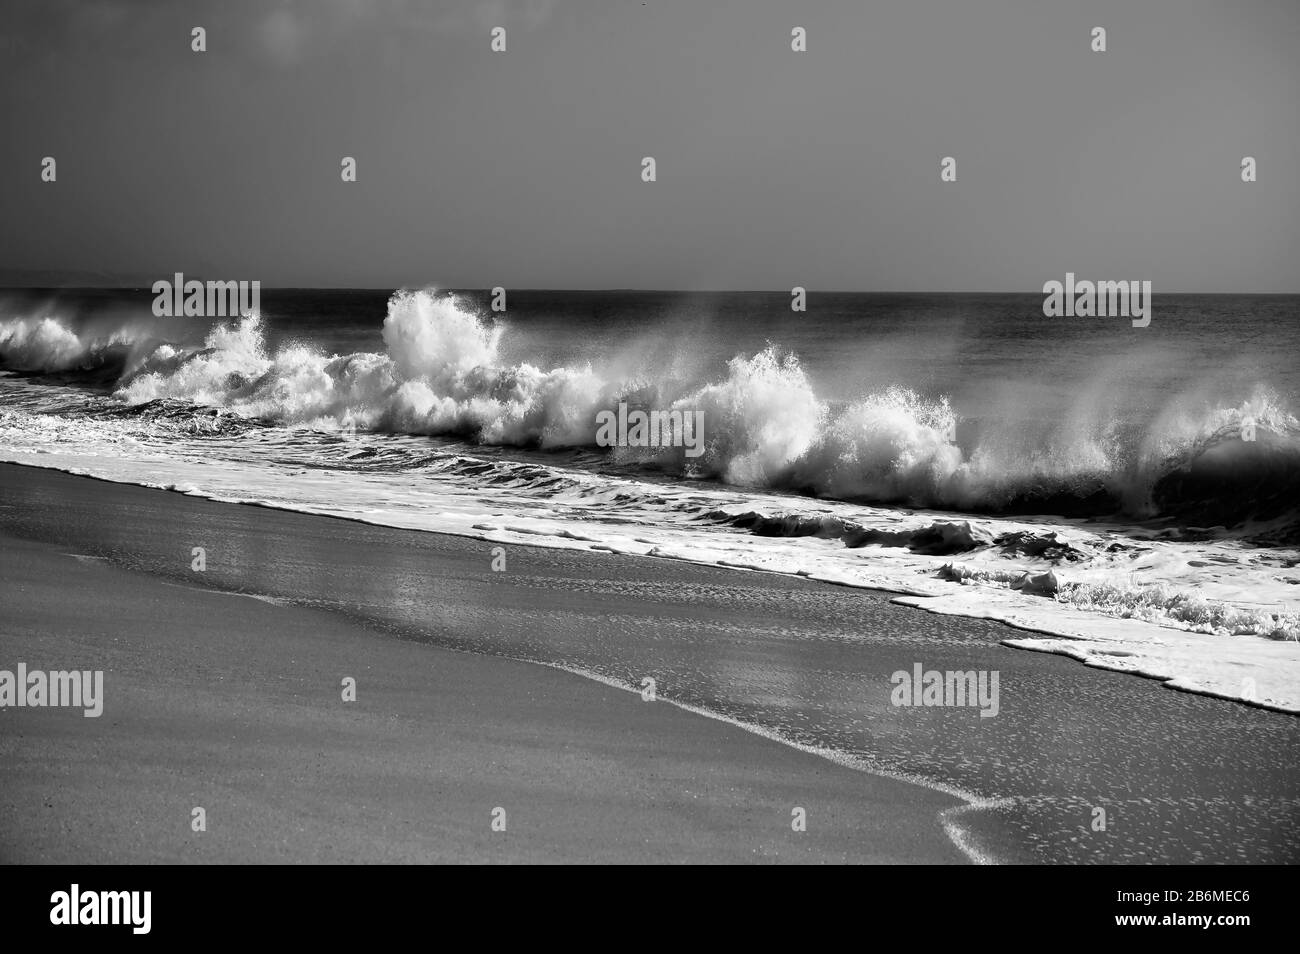 El viento a través de las olas rompientes llega a la playa. Fotografía en blanco y negro. Foto de stock